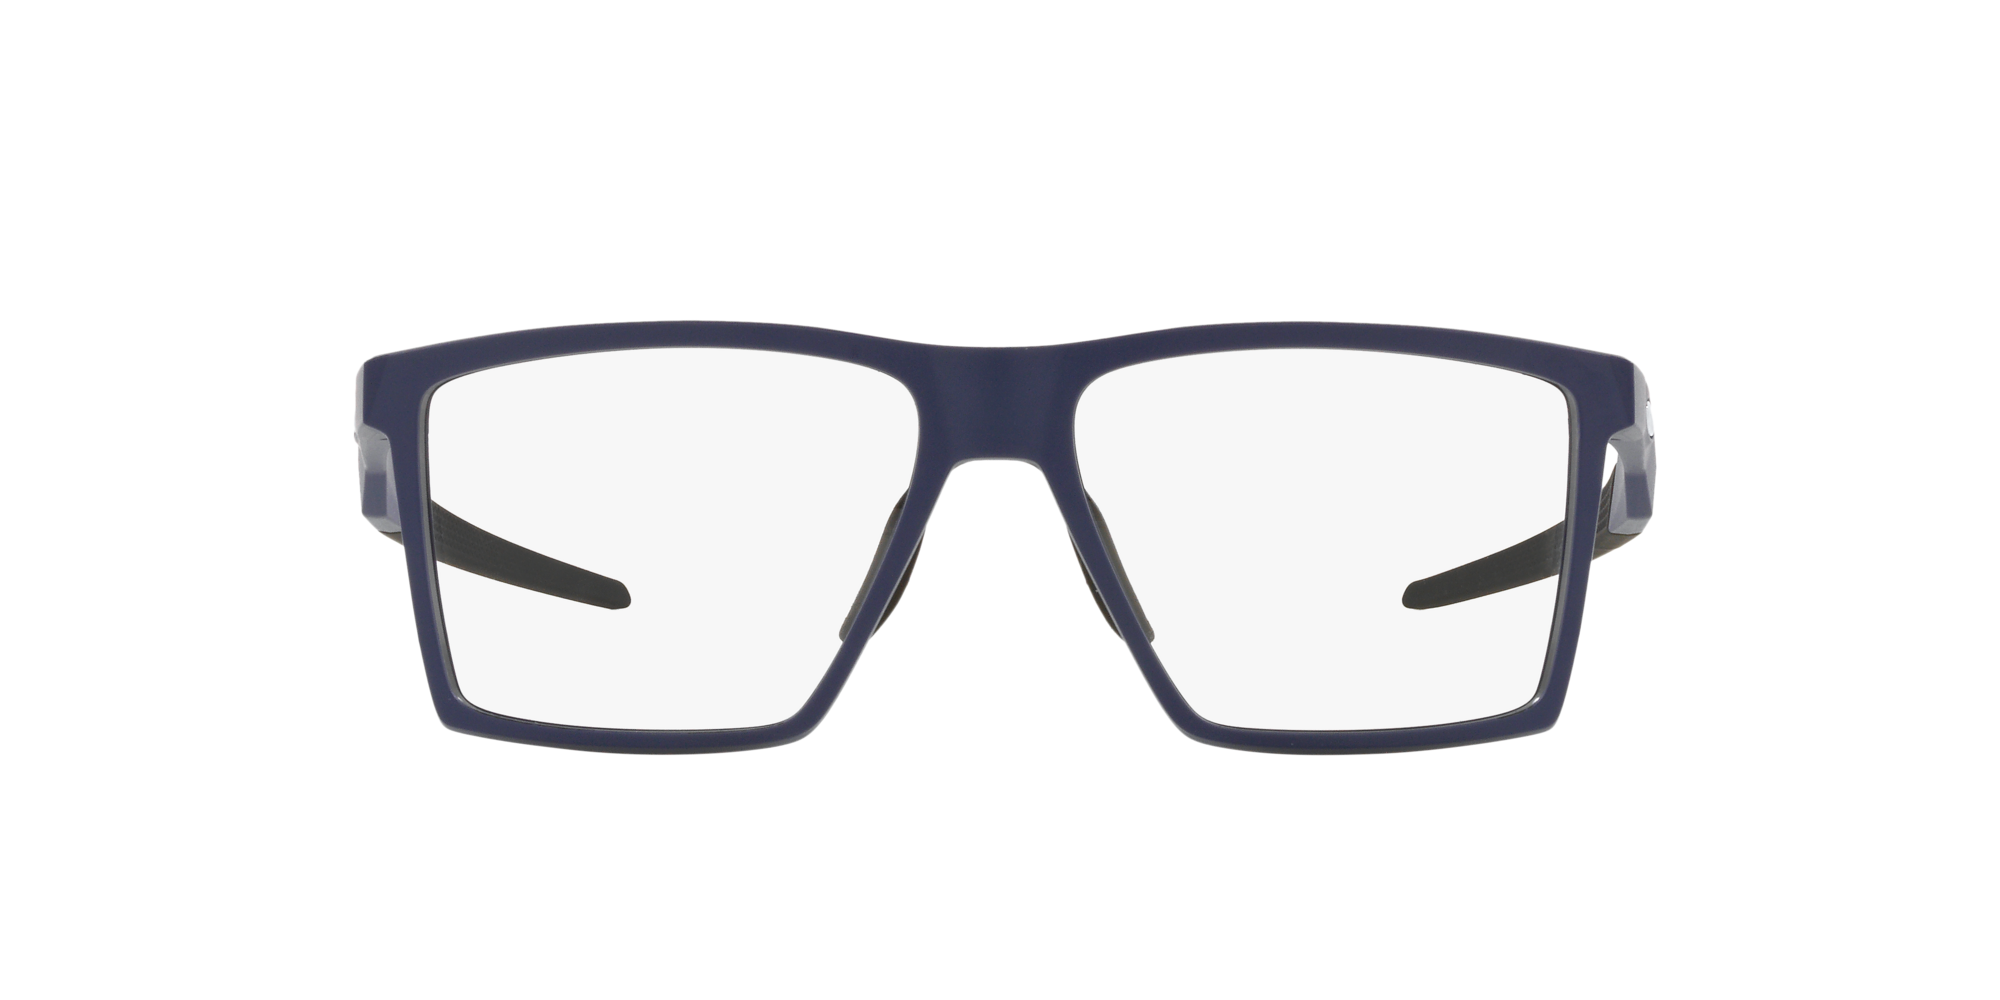 Das Bild zeigt die Korrektionsbrille OX8052 805203 von der Marke Oakley  in  universe blue..